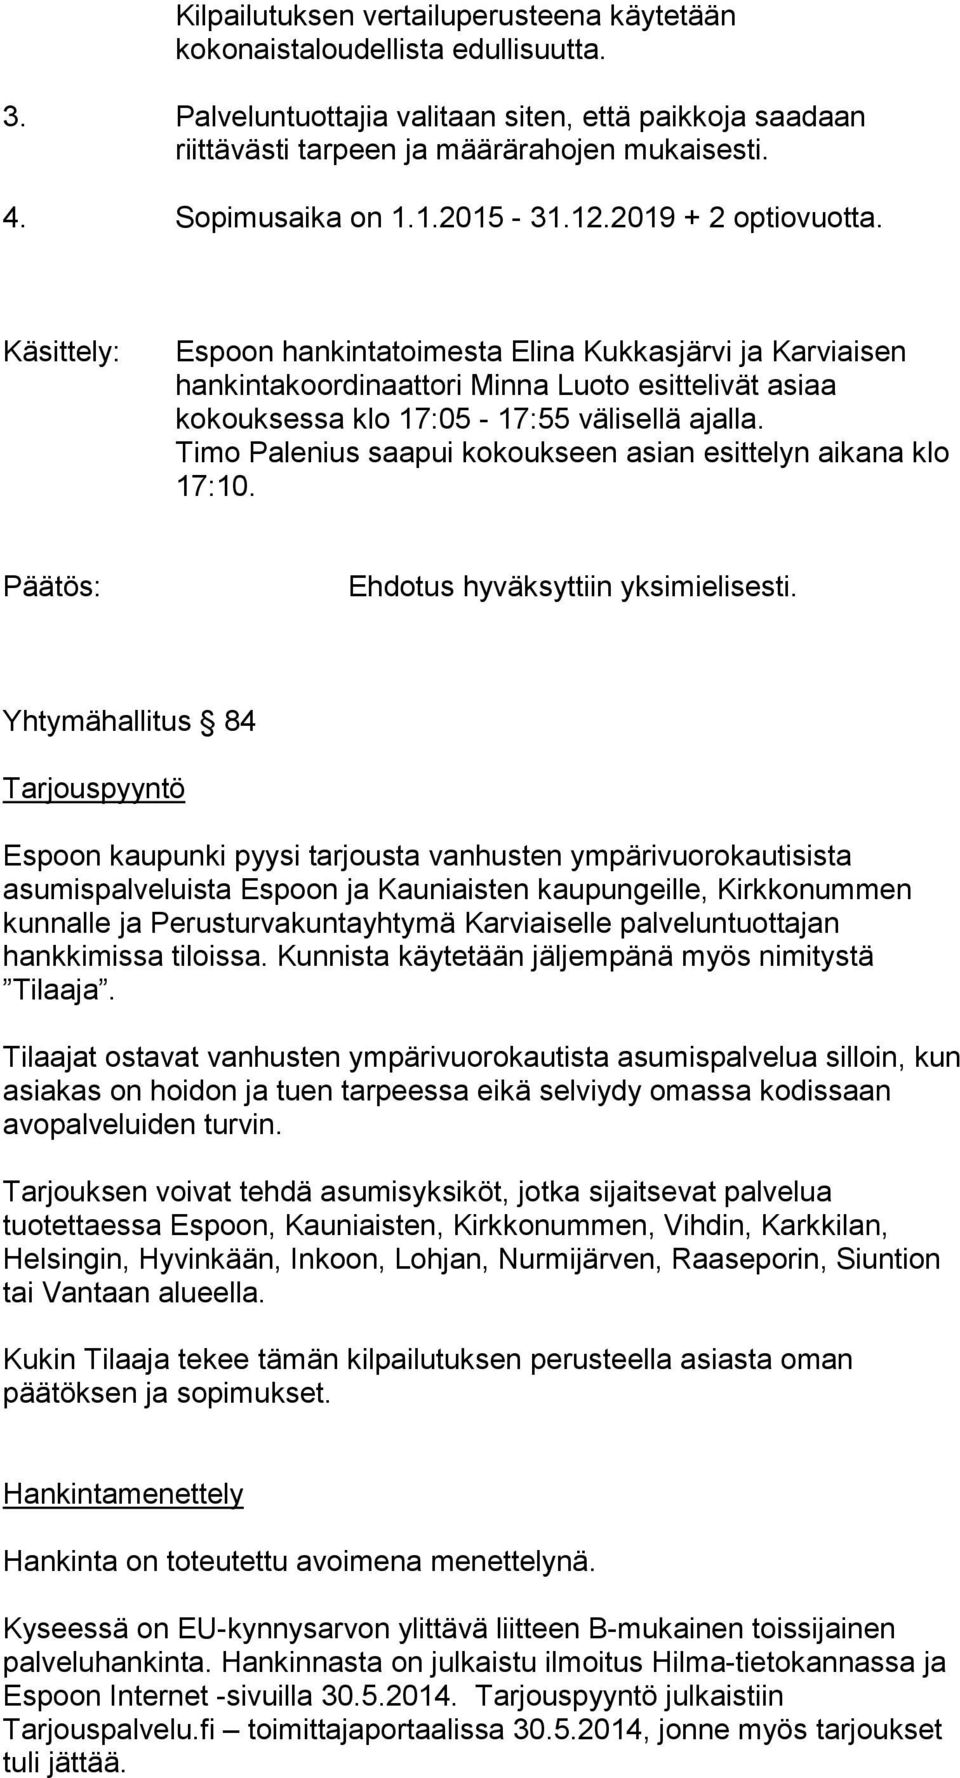 Käsittely: Espoon hankintatoimesta Elina Kukkasjärvi ja Karviaisen hankintakoordinaattori Minna Luoto esittelivät asiaa kokouksessa klo 17:05-17:55 välisellä ajalla.